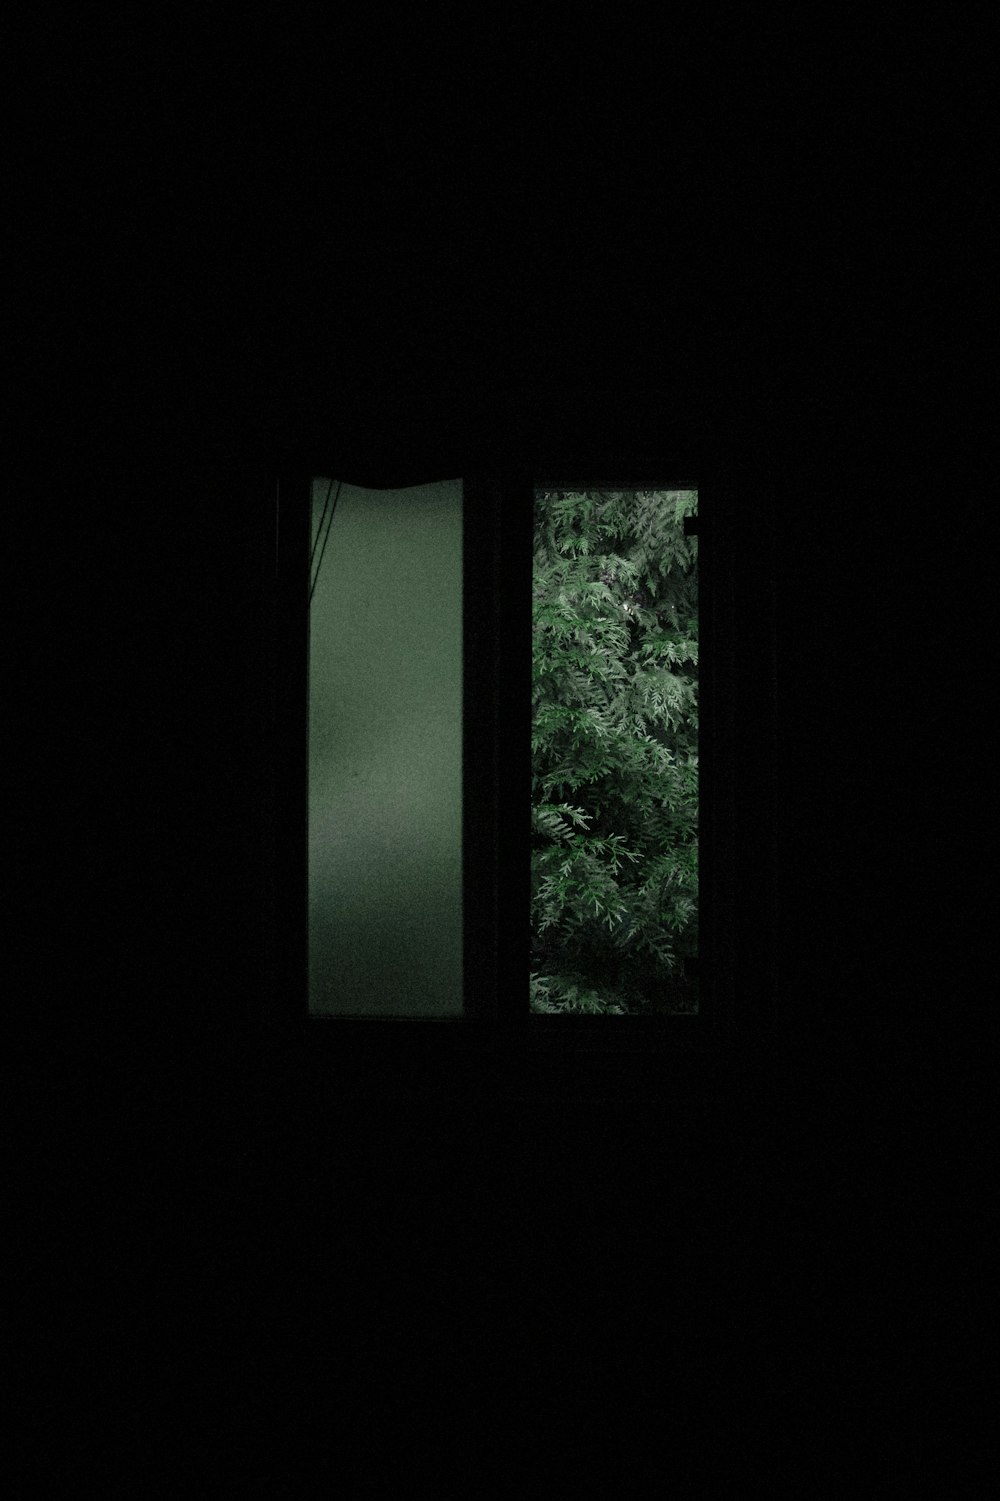 창문 앞의 푸른 나무